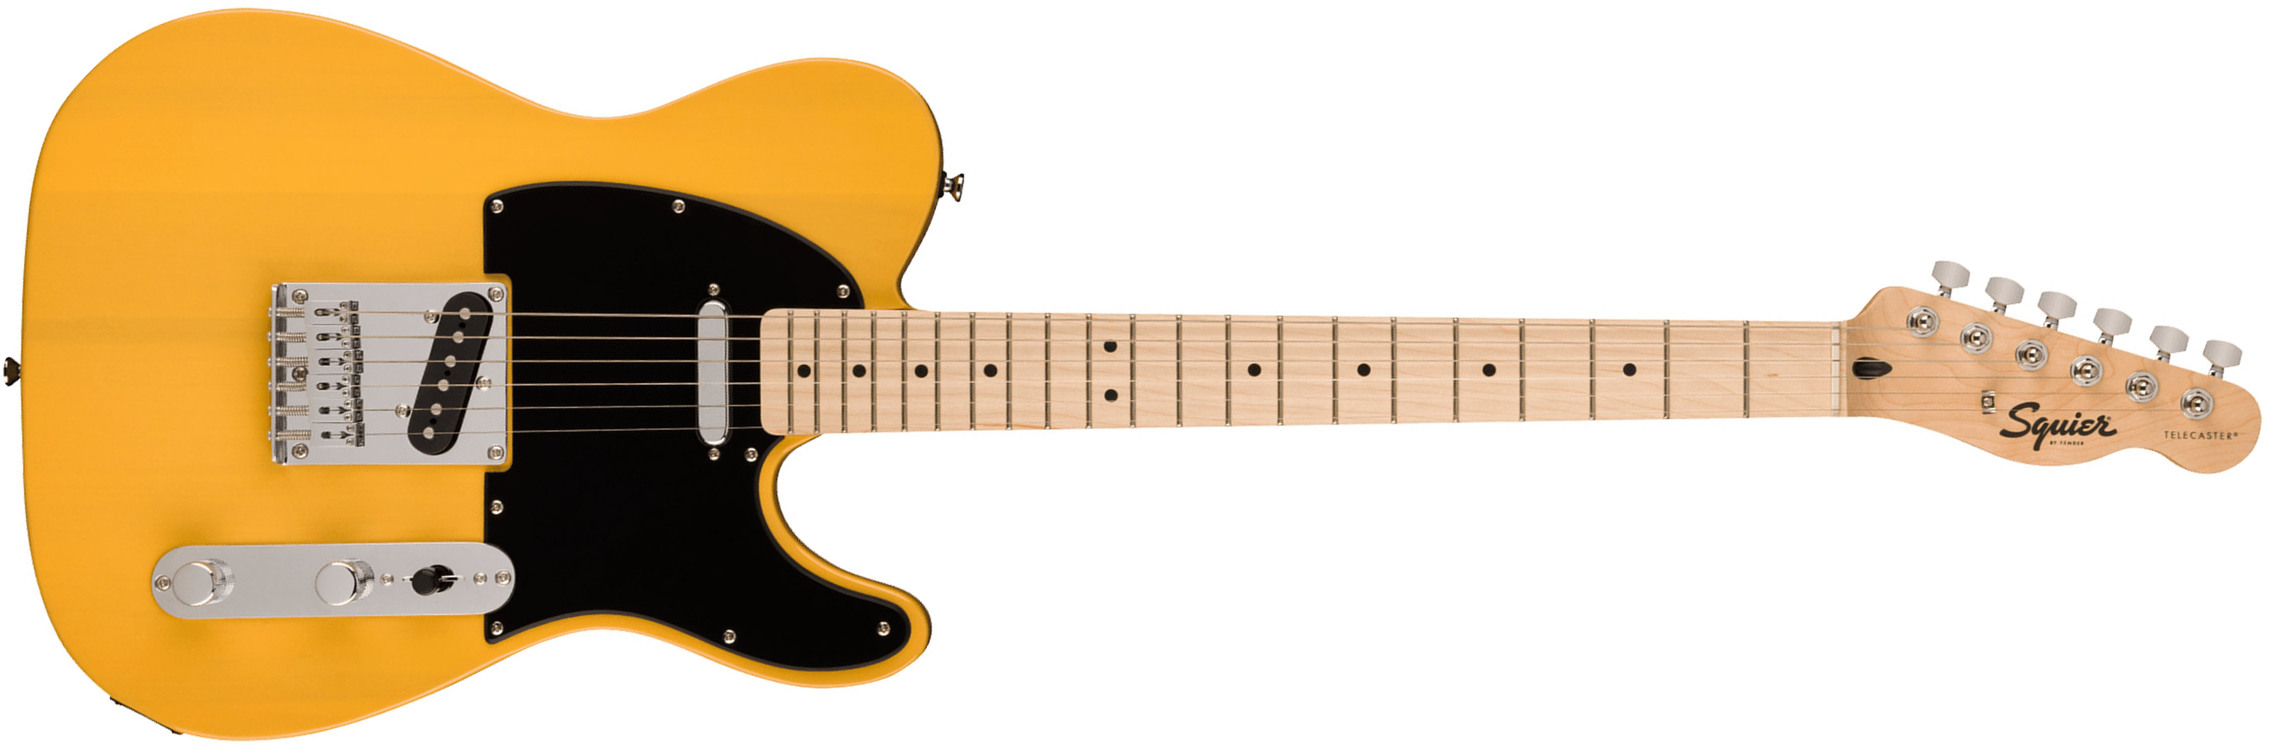 Squier Tele Sonic 2s Ht Mn - Butterscotch Blonde - Guitarra eléctrica con forma de tel - Main picture